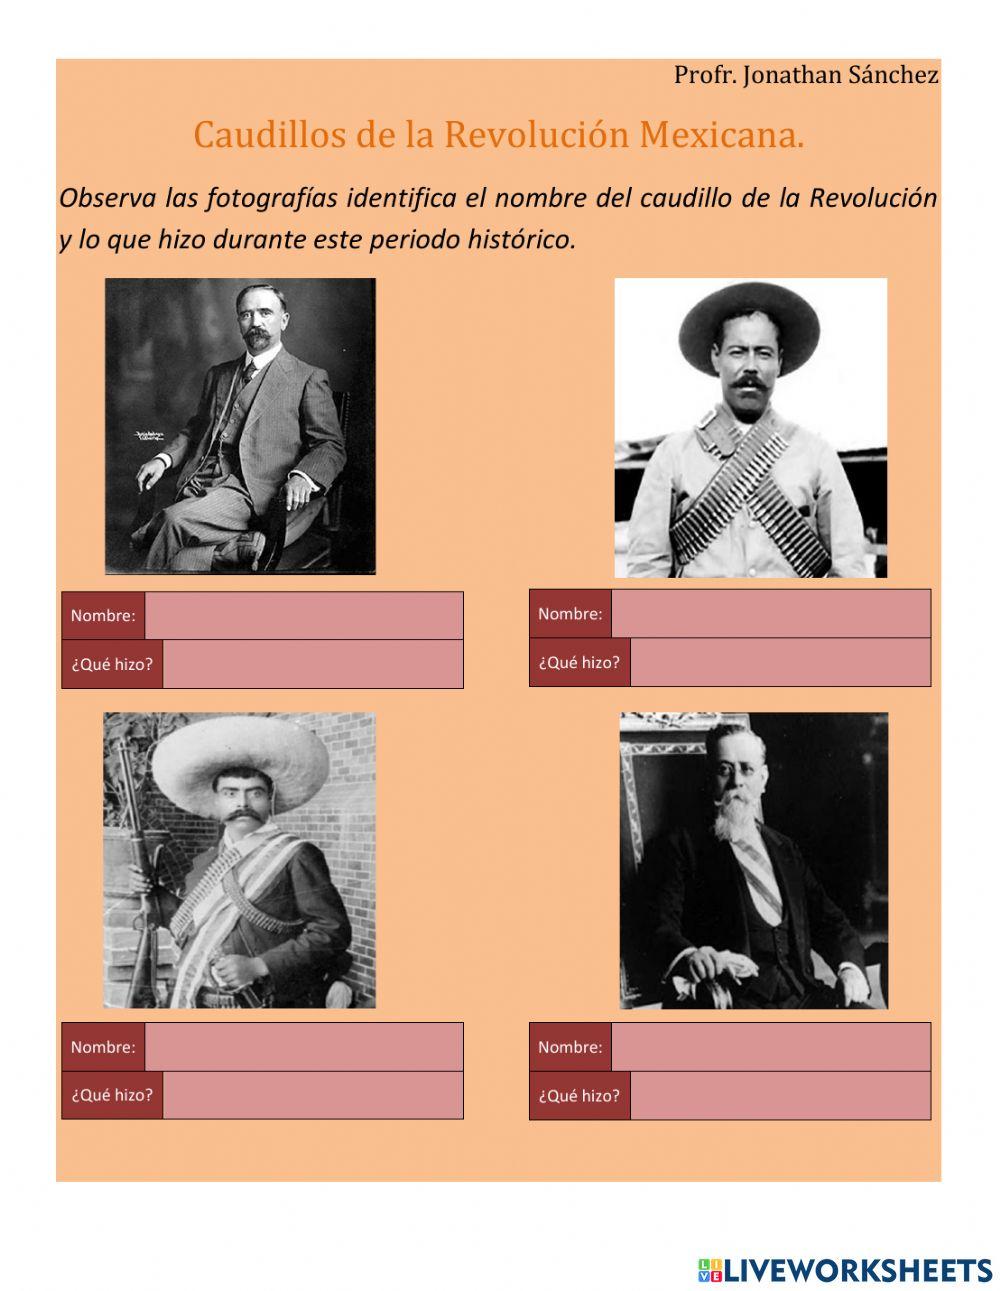 Caudillos de la Revolución Mexicana